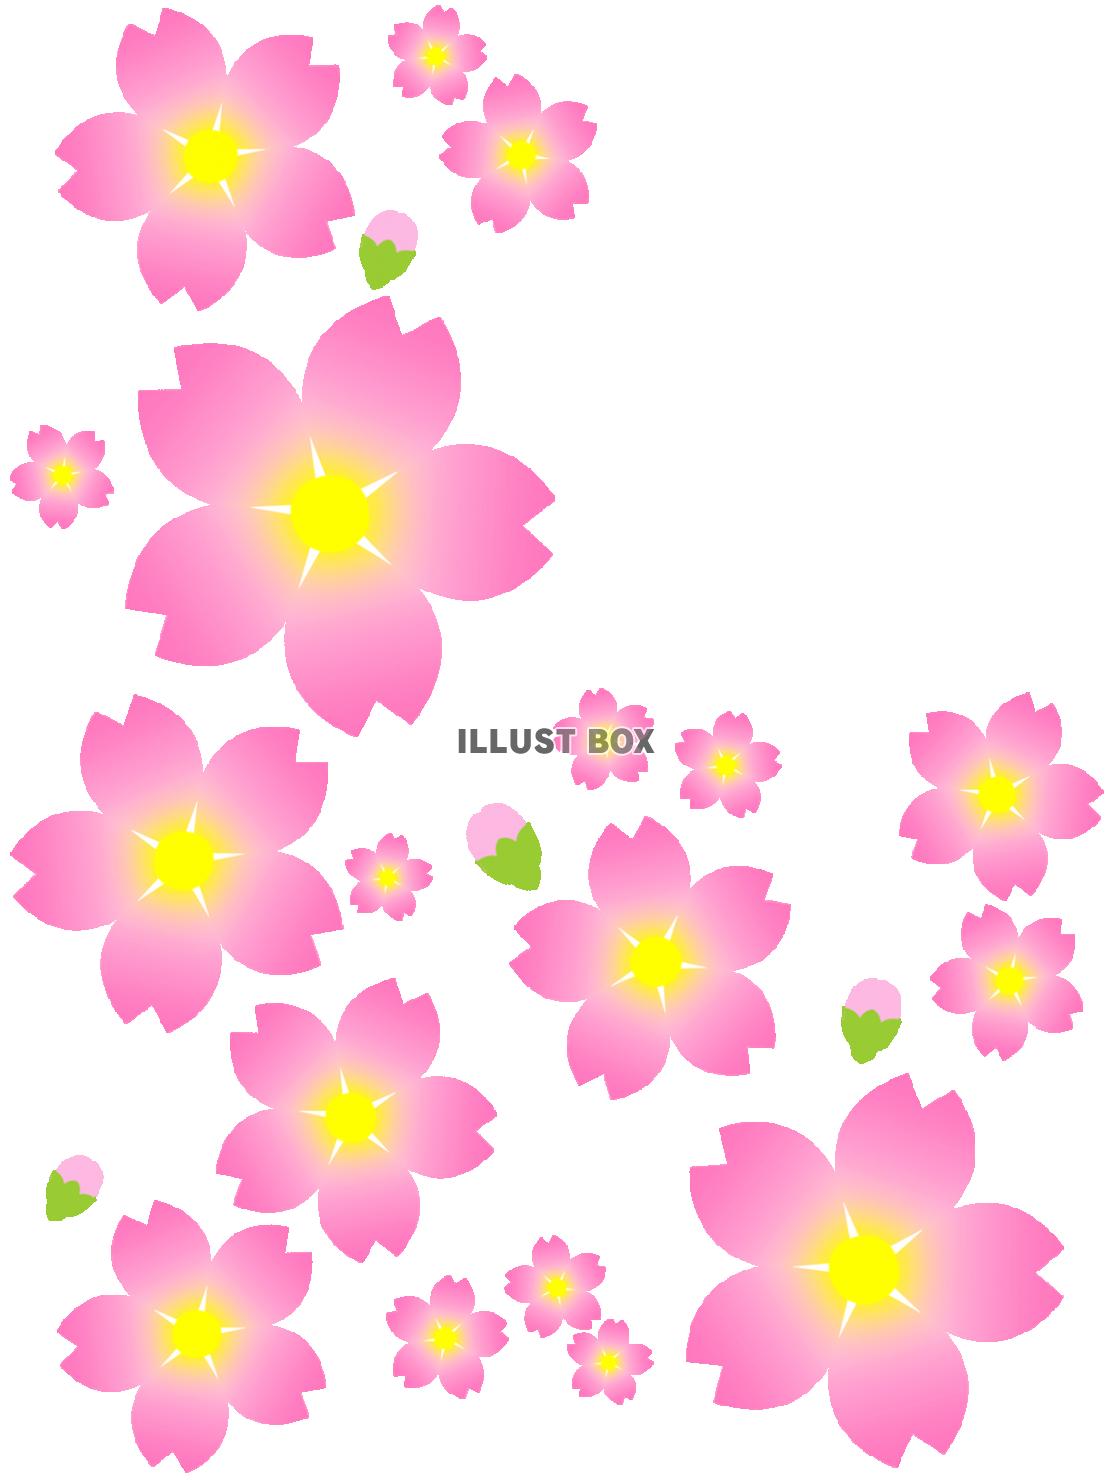 無料イラスト 桜の花模様壁紙シンプル背景素材イラスト 透過 Png